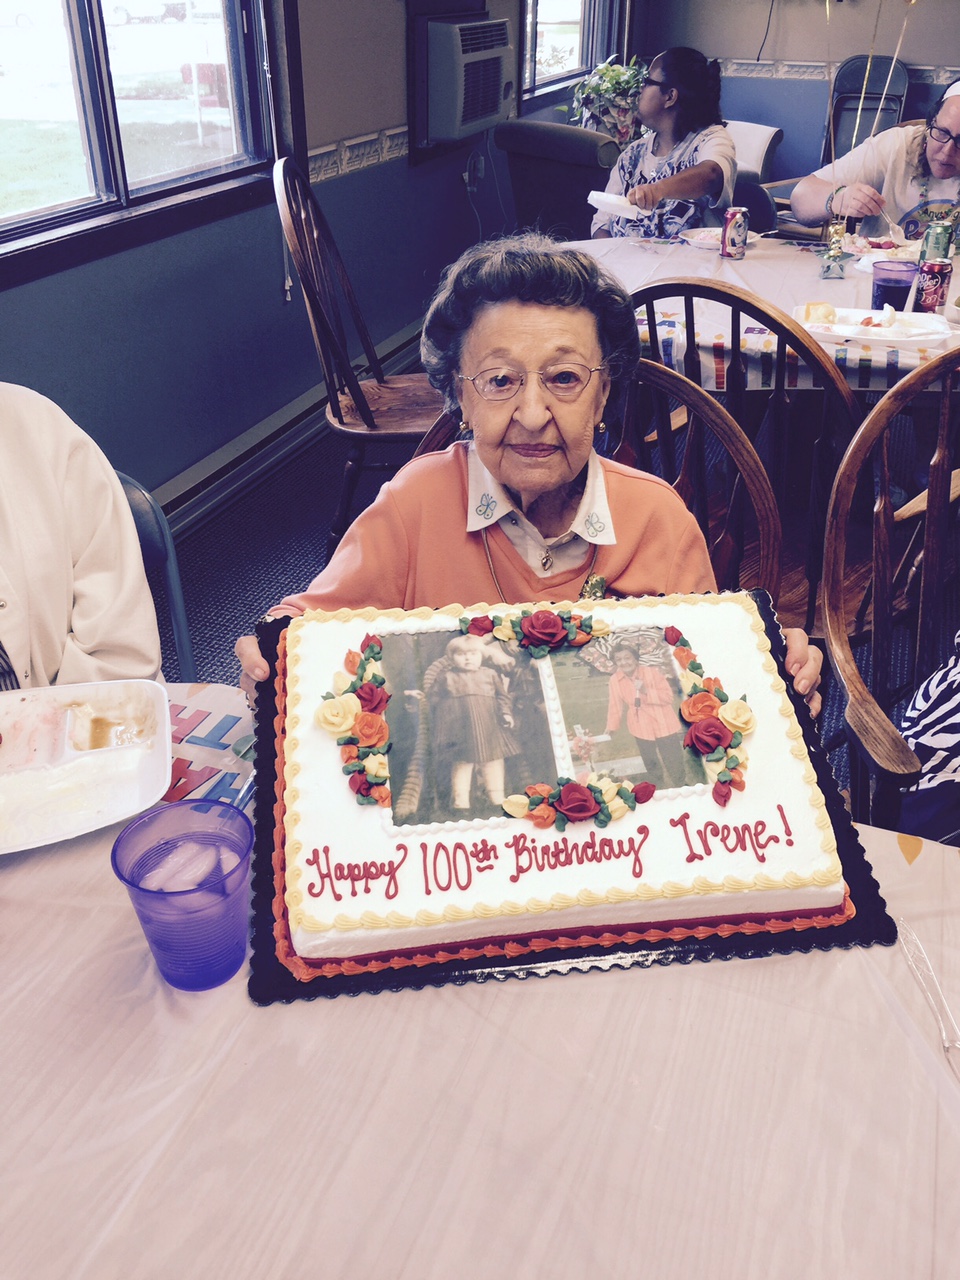 Irene's 100th birthday party